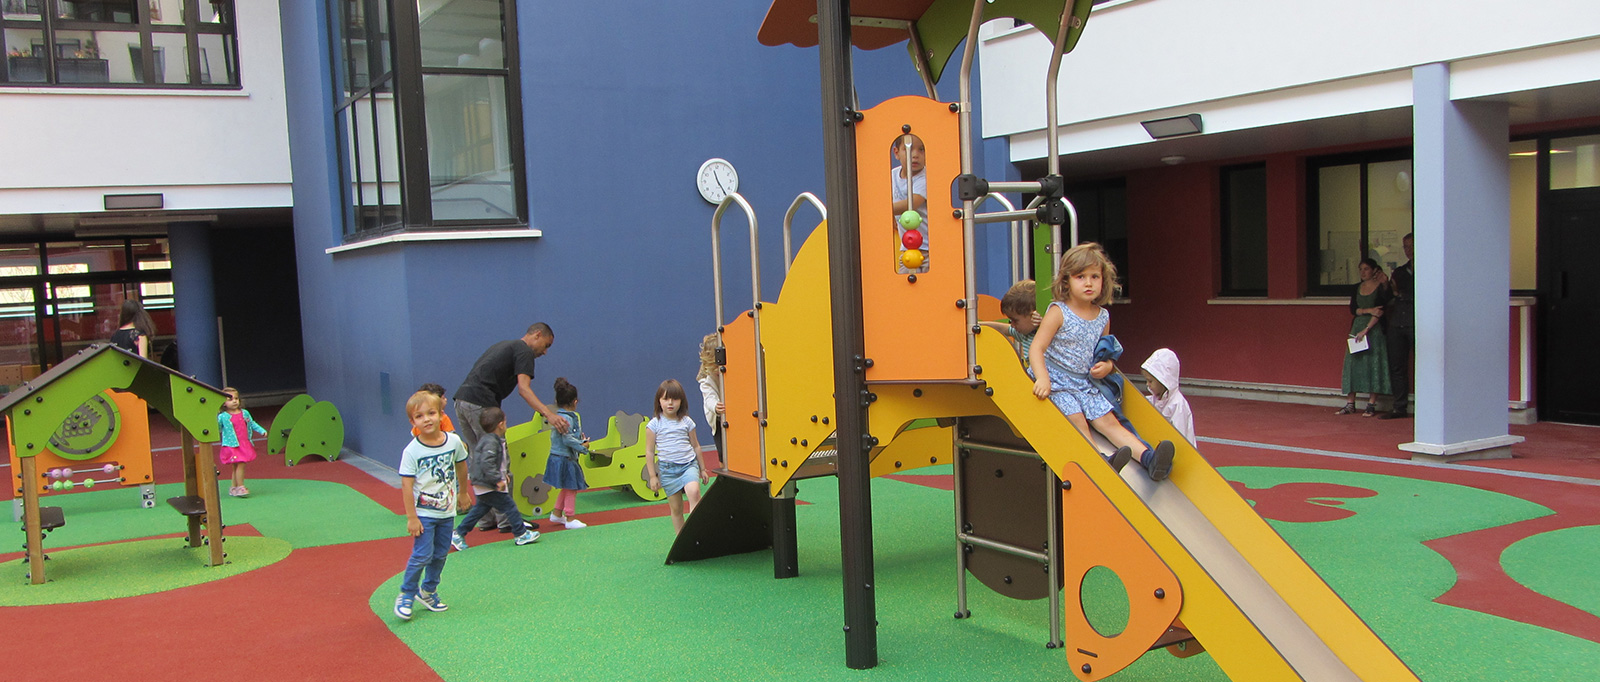 Espace public & Paysage - Jeux d'enfants, jeux d'école